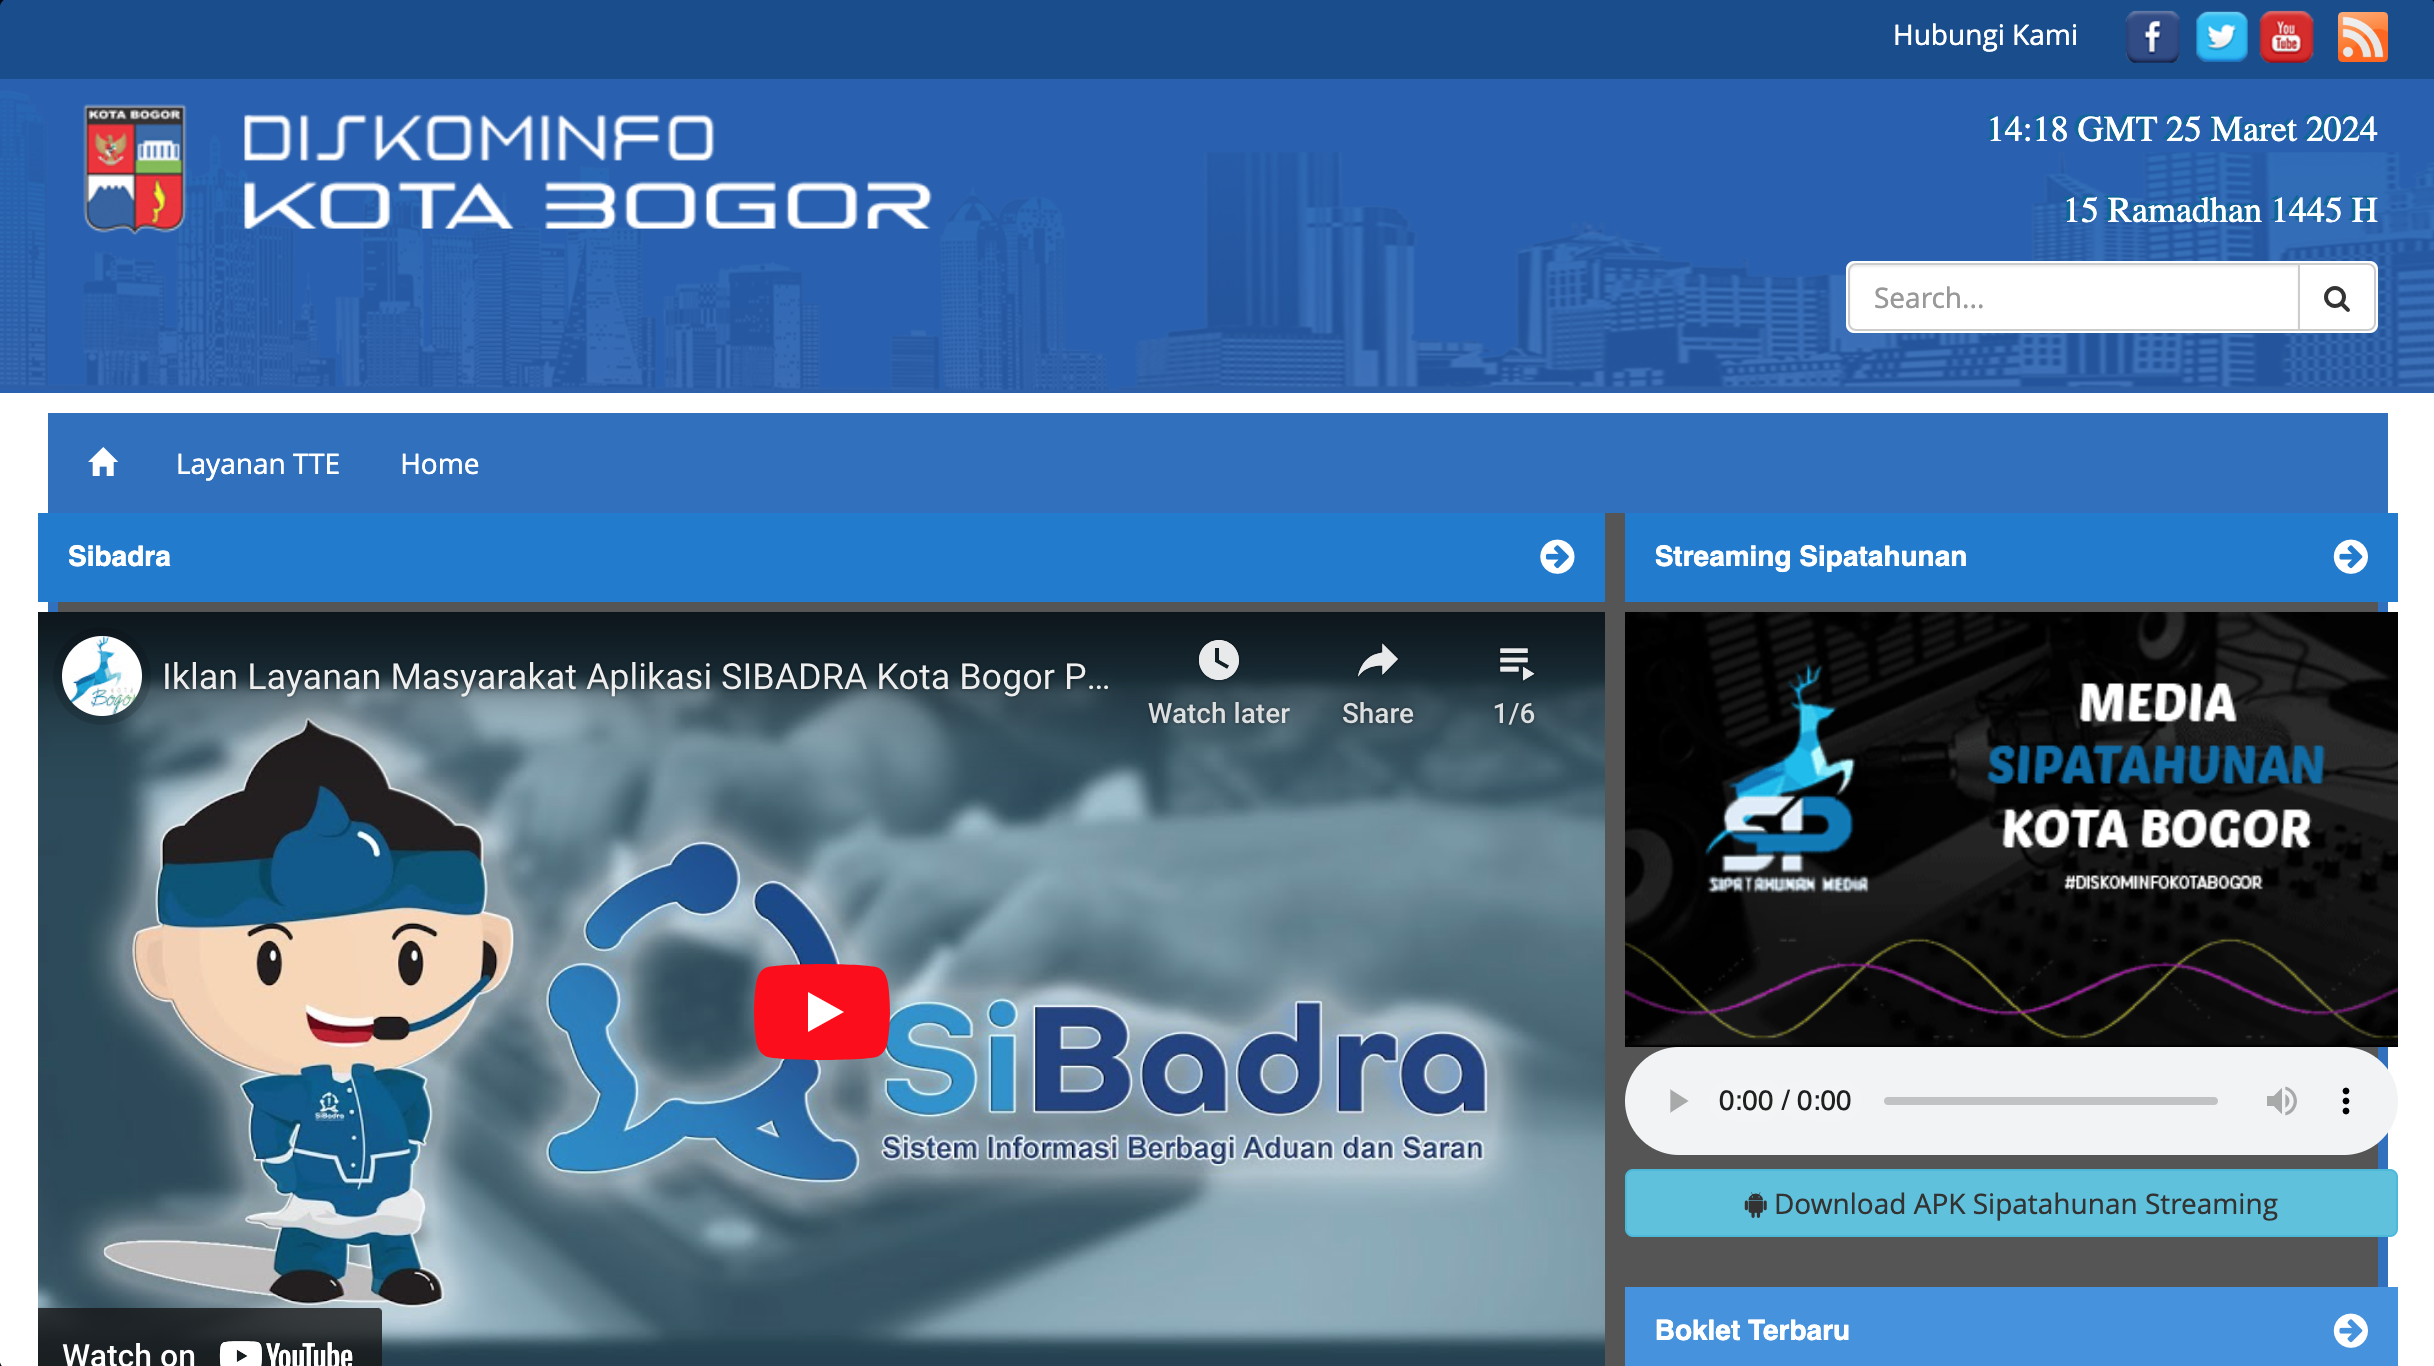 Image Diskominfo Kota Bogor Website